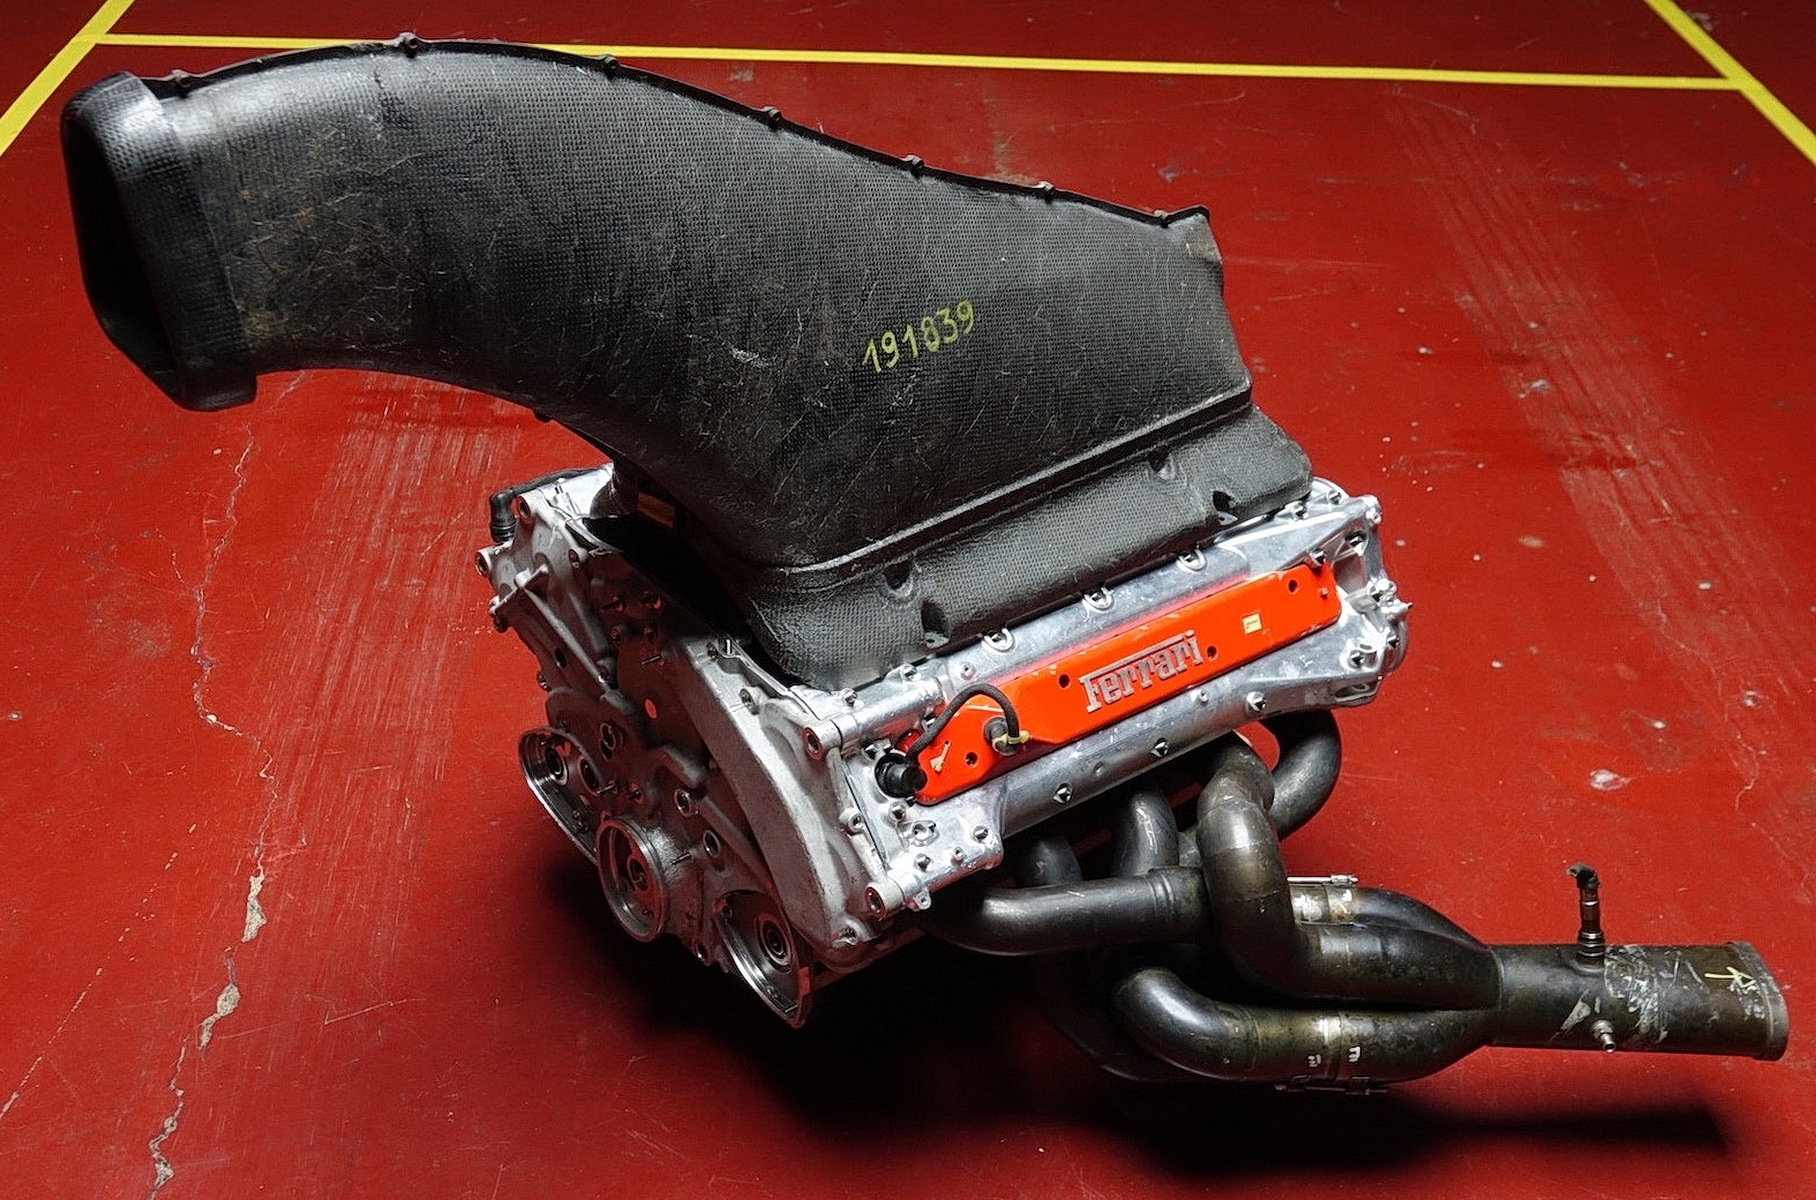 Нерабочий мотор чемпионского болида Ferrari продали по цене новой BMW